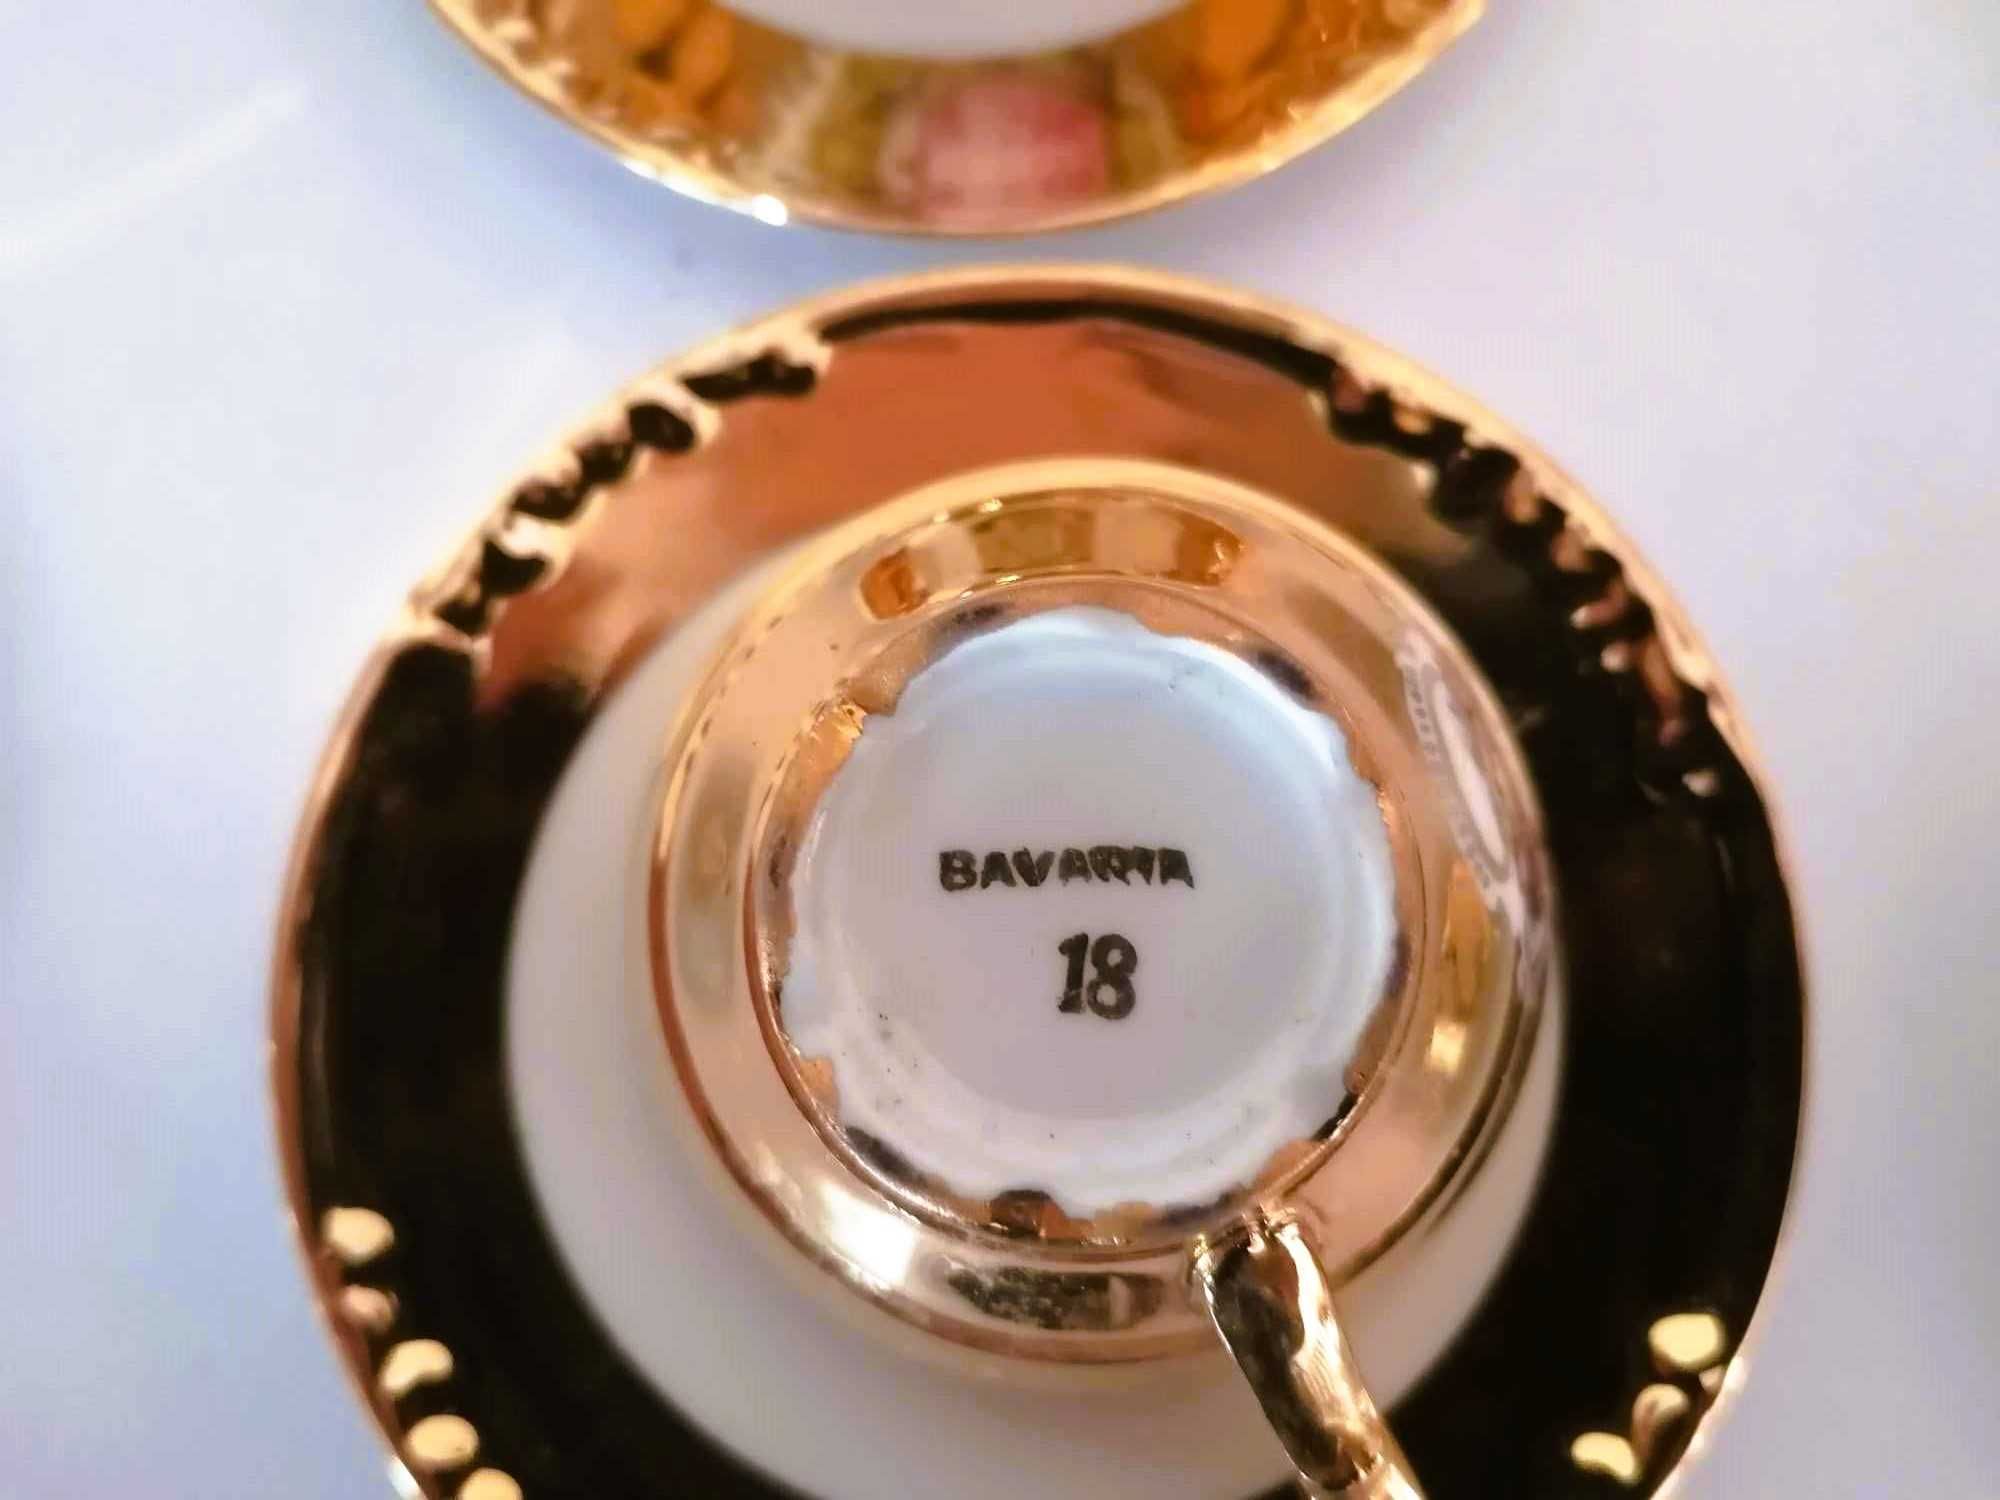 Superb serviciu de cafea  portelan Bavaria model Fragonard